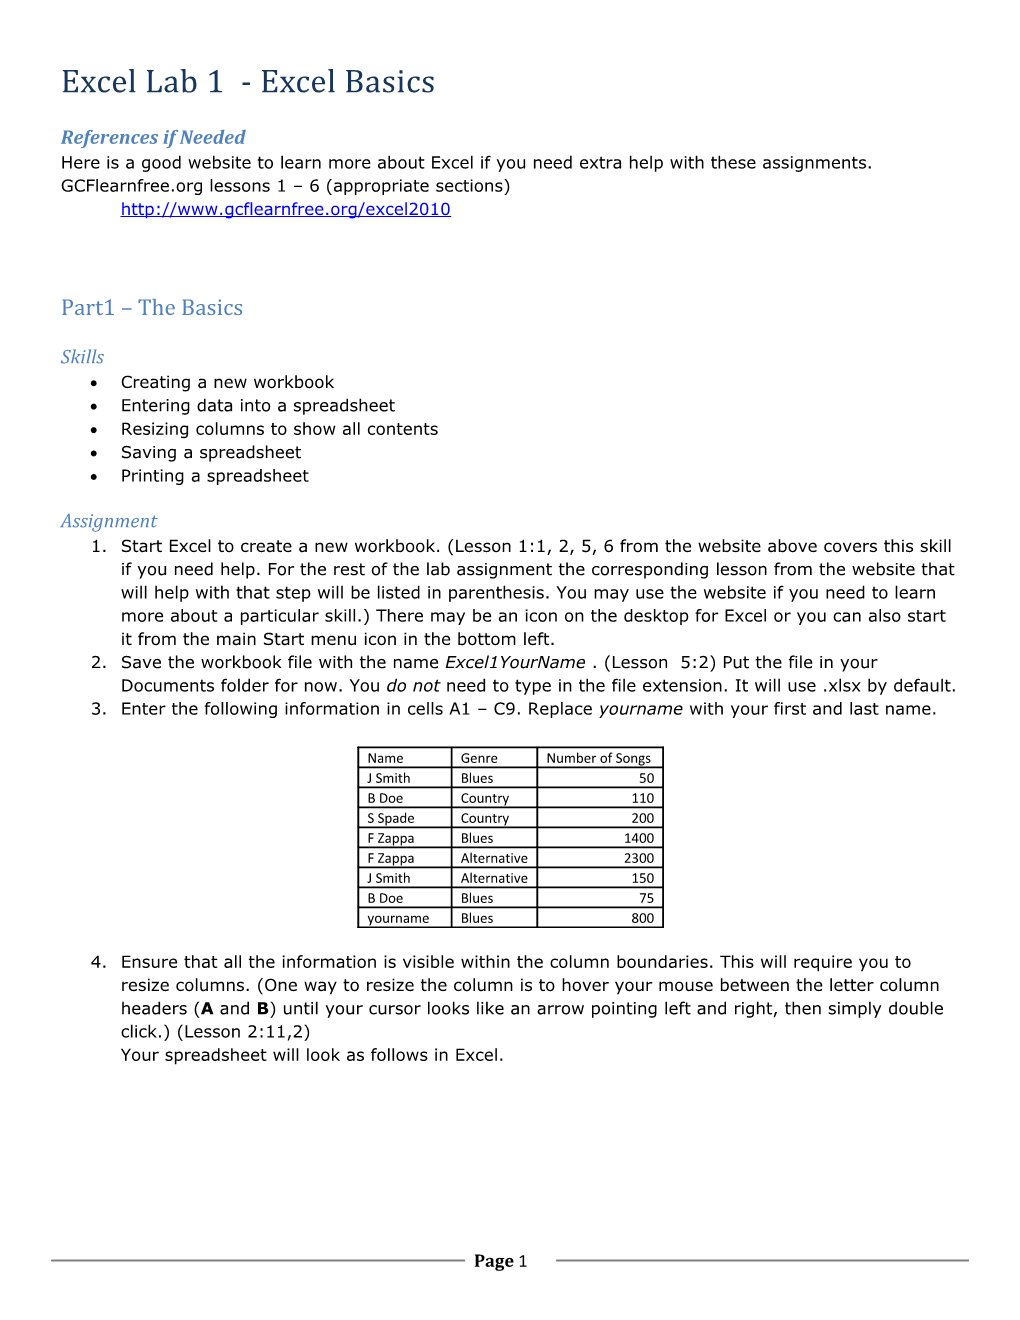 Excel Lab 1- Excel Basics